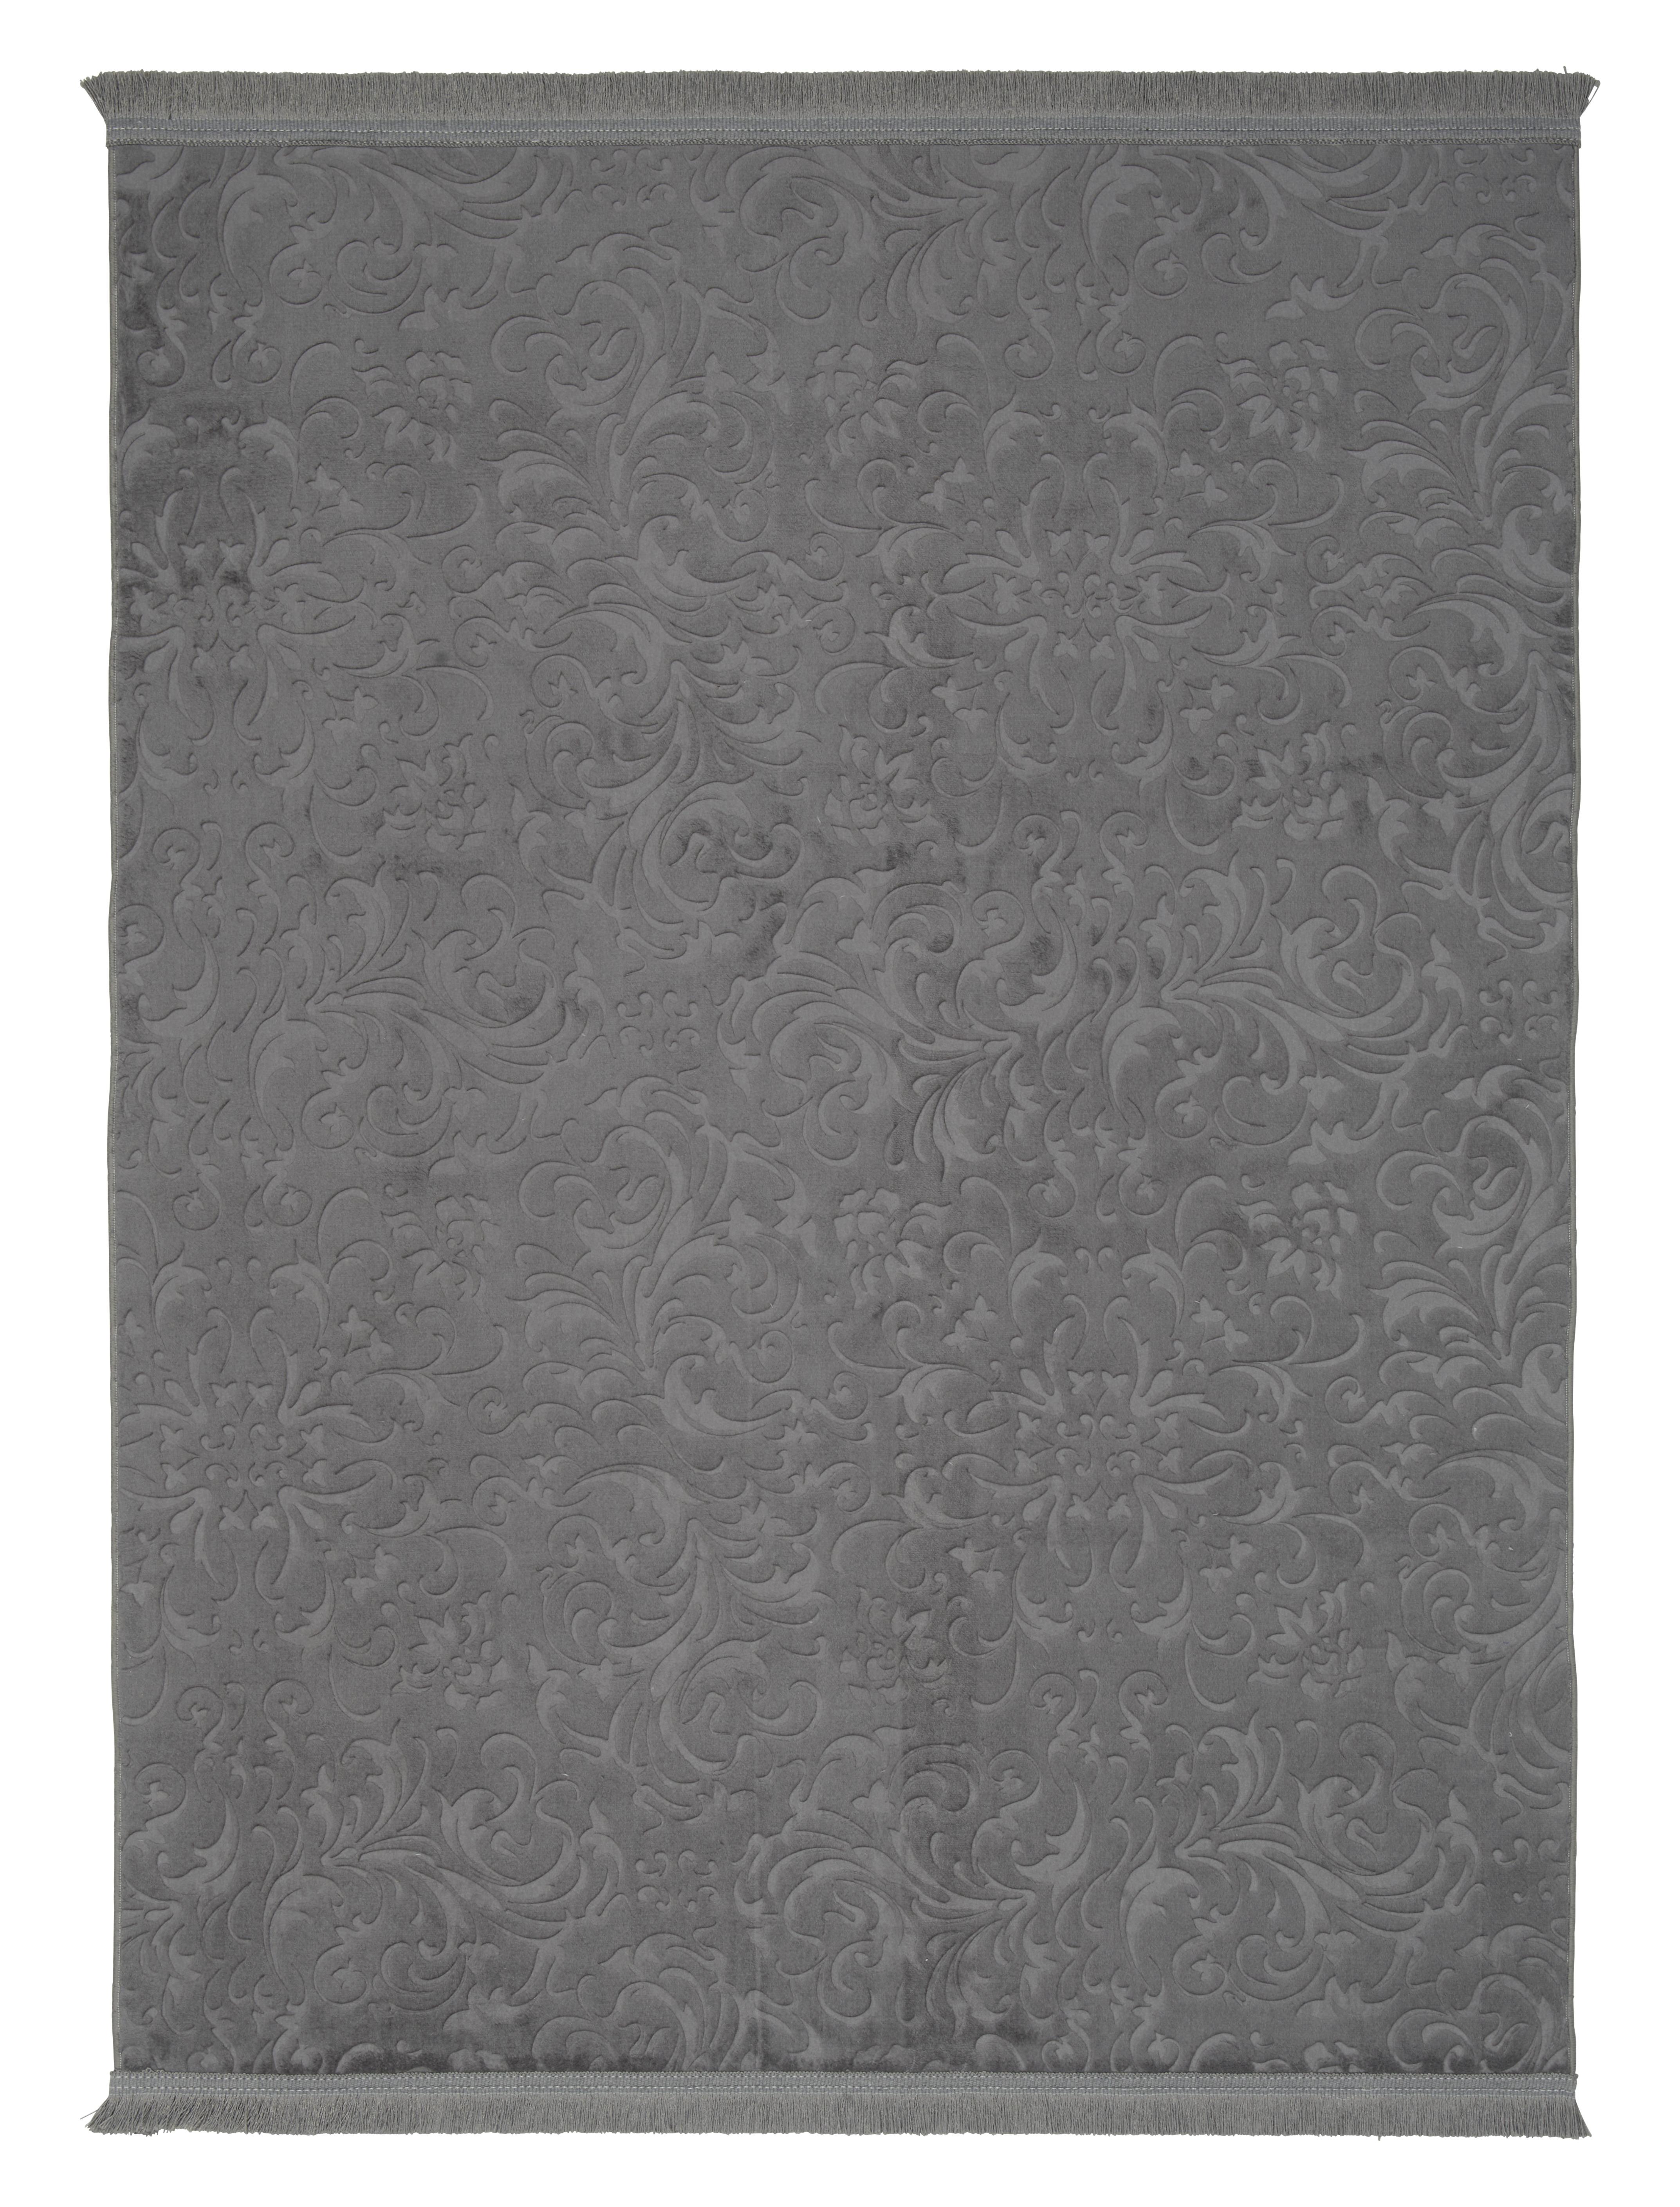 Webteppich Daphne 1 in Anthrazit ca. 80x140cm - Anthrazit, MODERN, Textil (80cm) - Modern Living